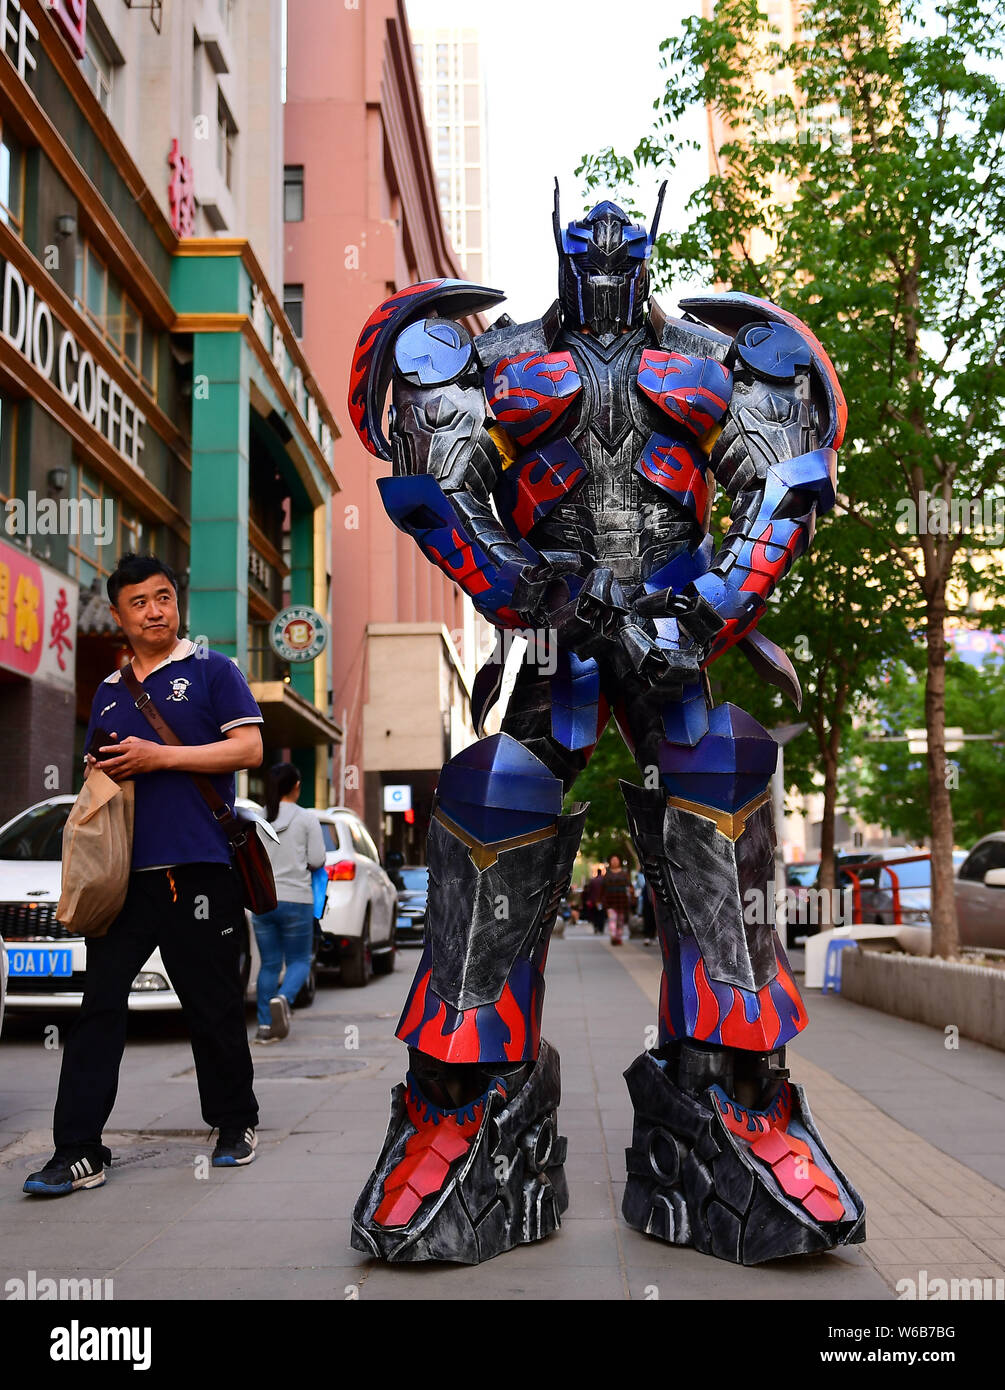 Datei - 25-jährige Chinese Liu Sen versucht, eine realistische Kostüm von Optimus  Prime von Hollywood Film, Transformatoren: Alter vom Aussterben bedroht, an  seiner w Stockfotografie - Alamy